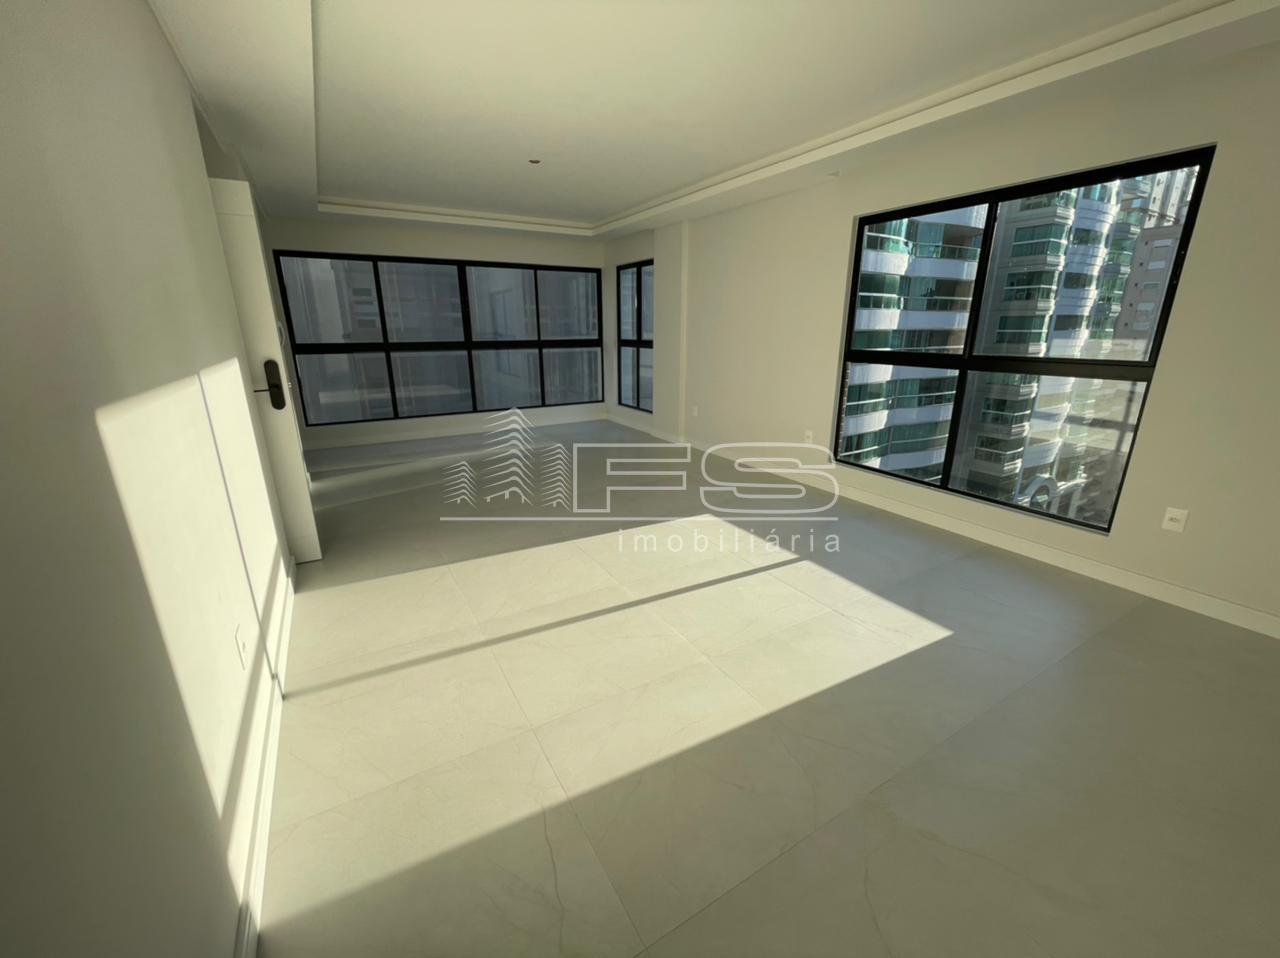 Apartamento com 3 Dormitórios à venda, 125 m² por R$ 934.819,00